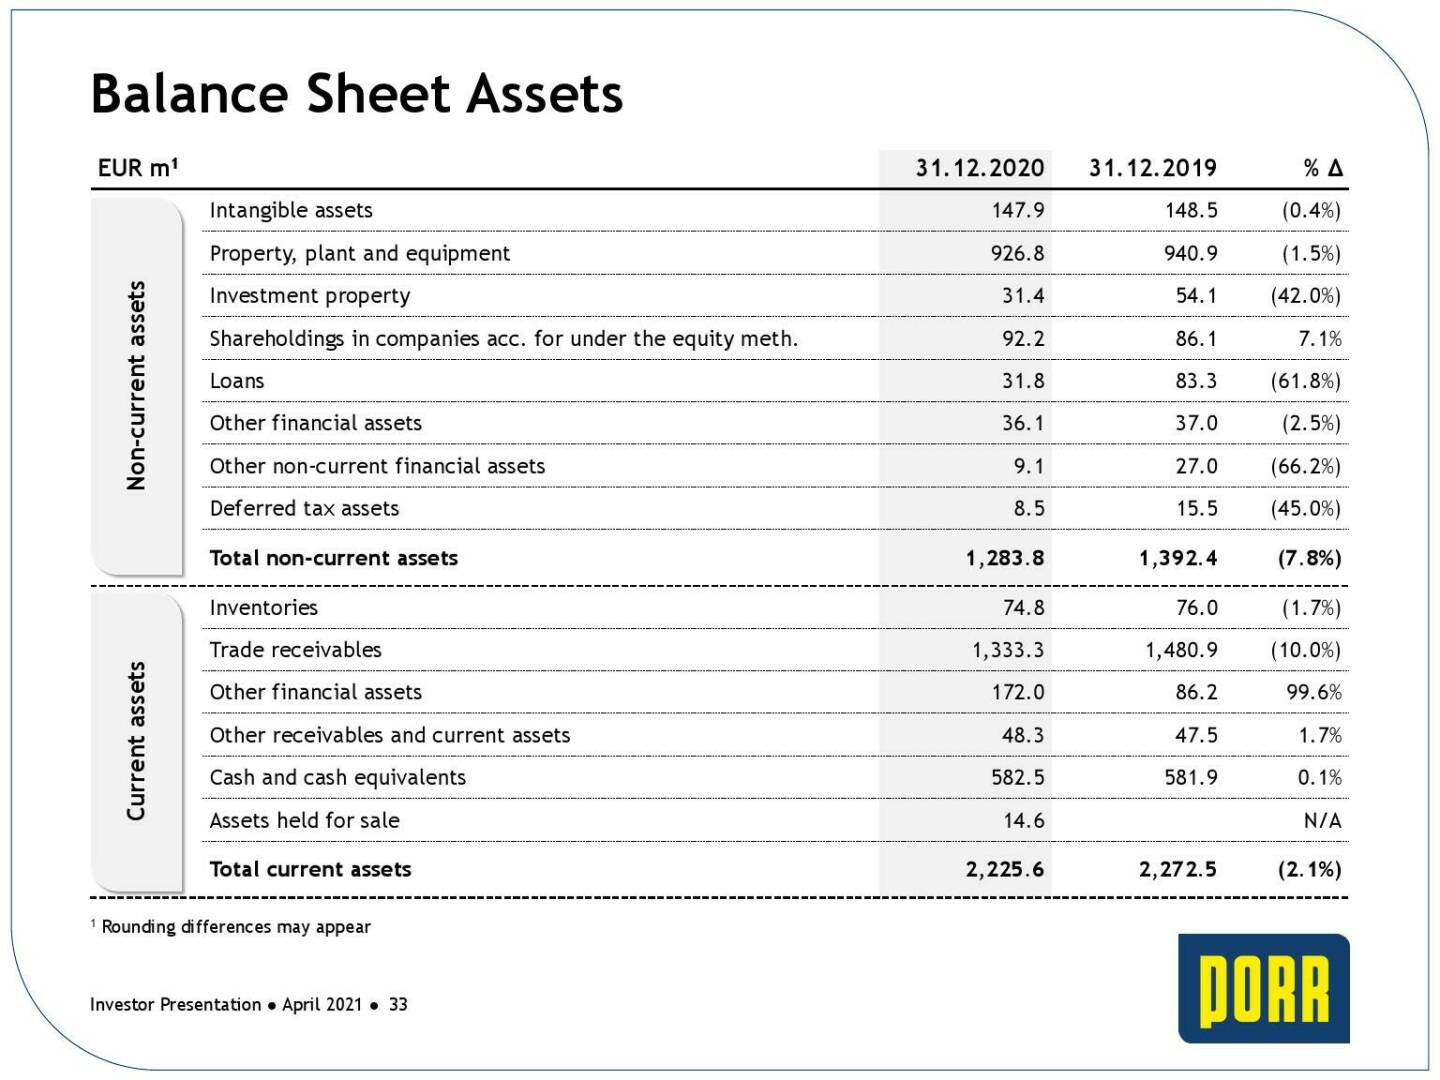 Porr - Balance sheet assets